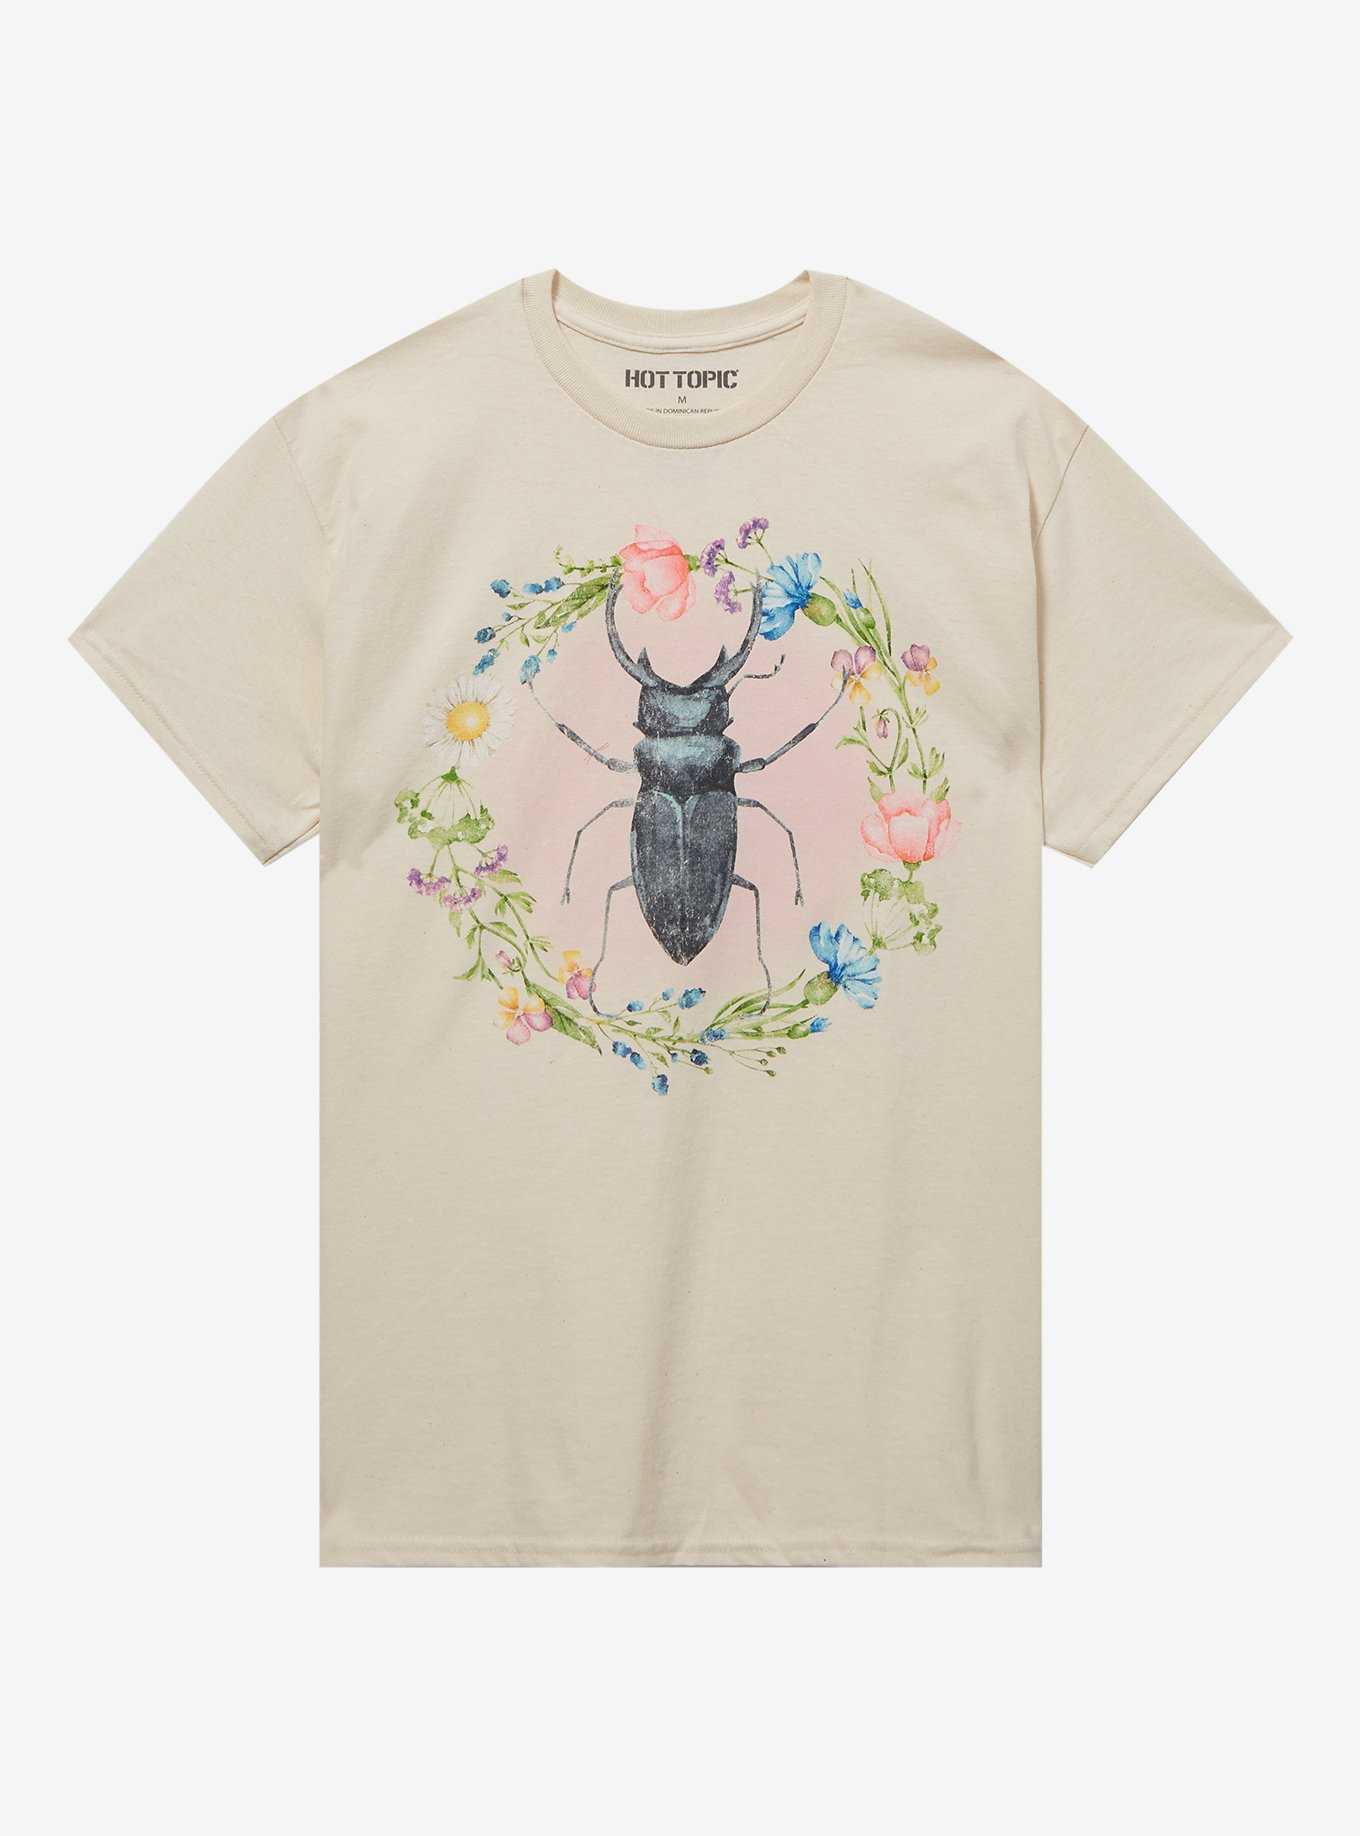 Beetle Floral Boyfriend Fit Girls T-Shirt, , hi-res